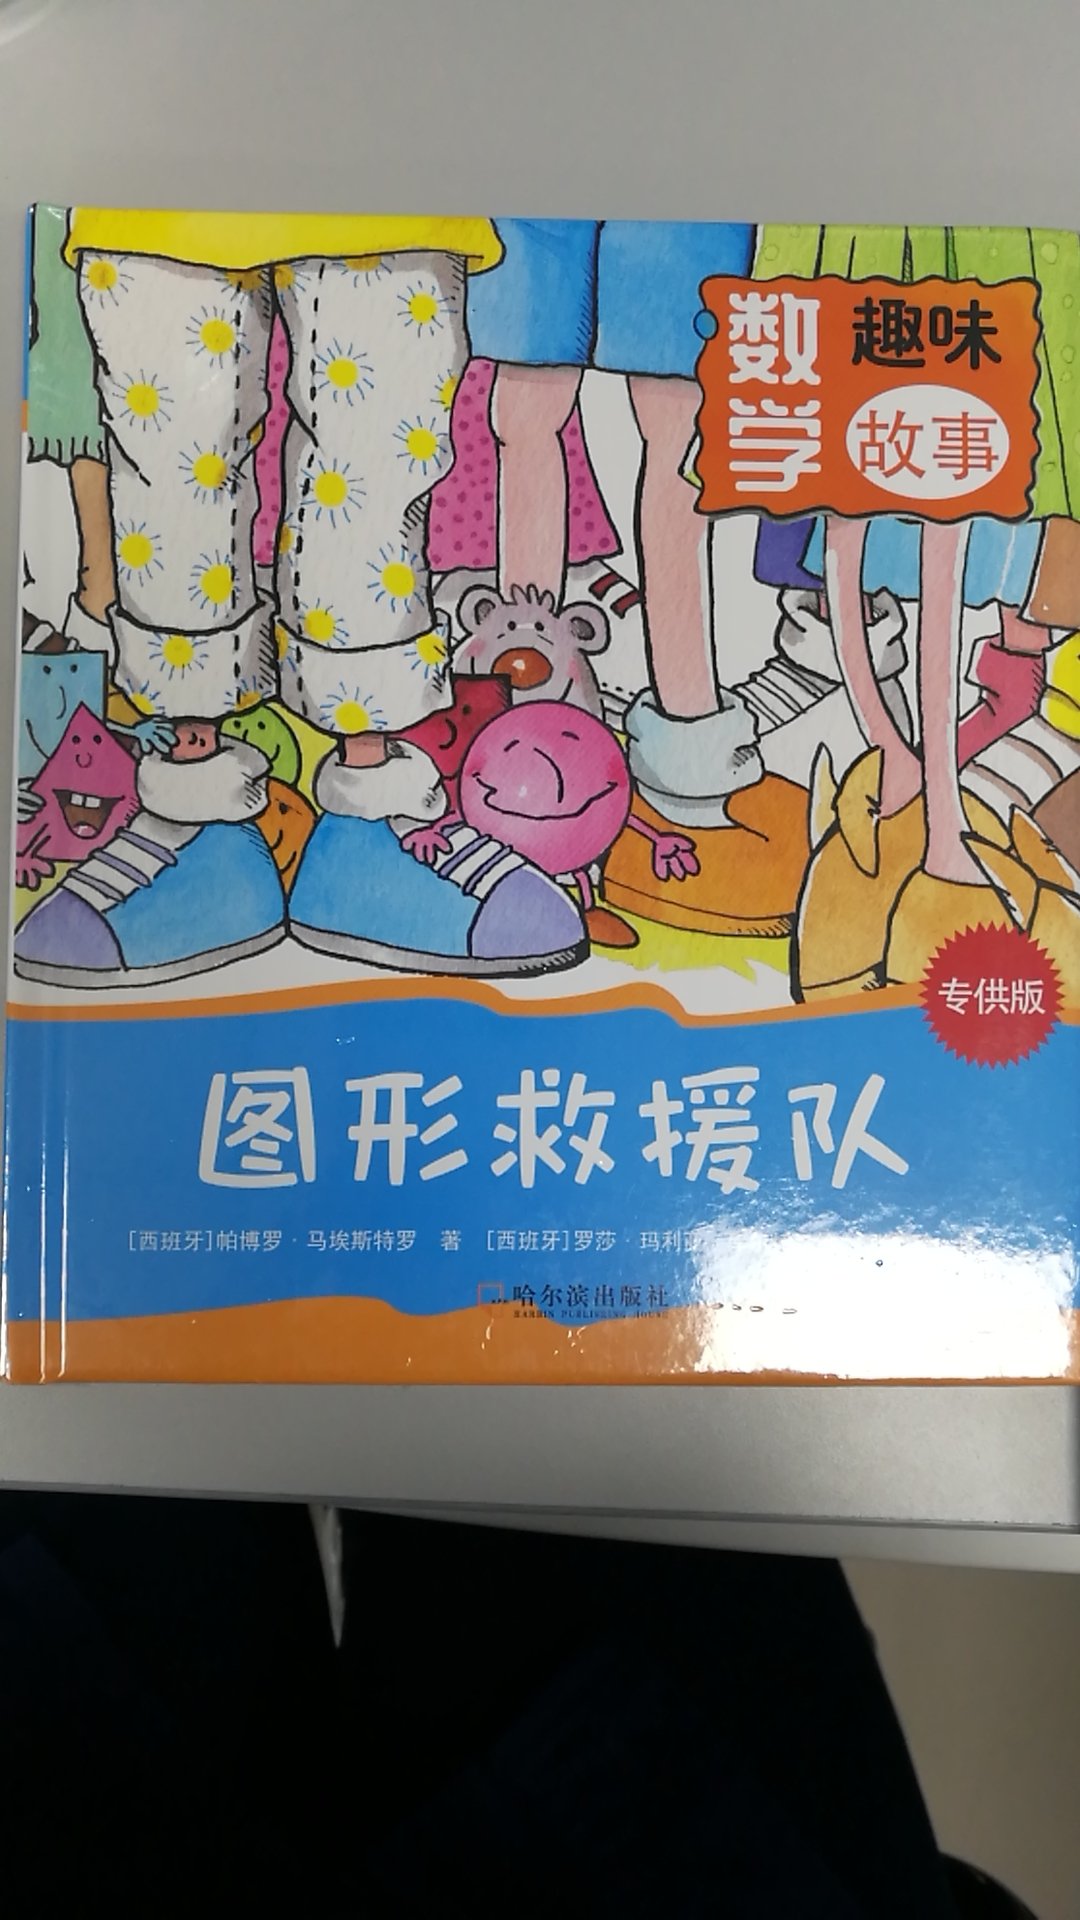 很有趣的一本书，希望孩子喜欢。